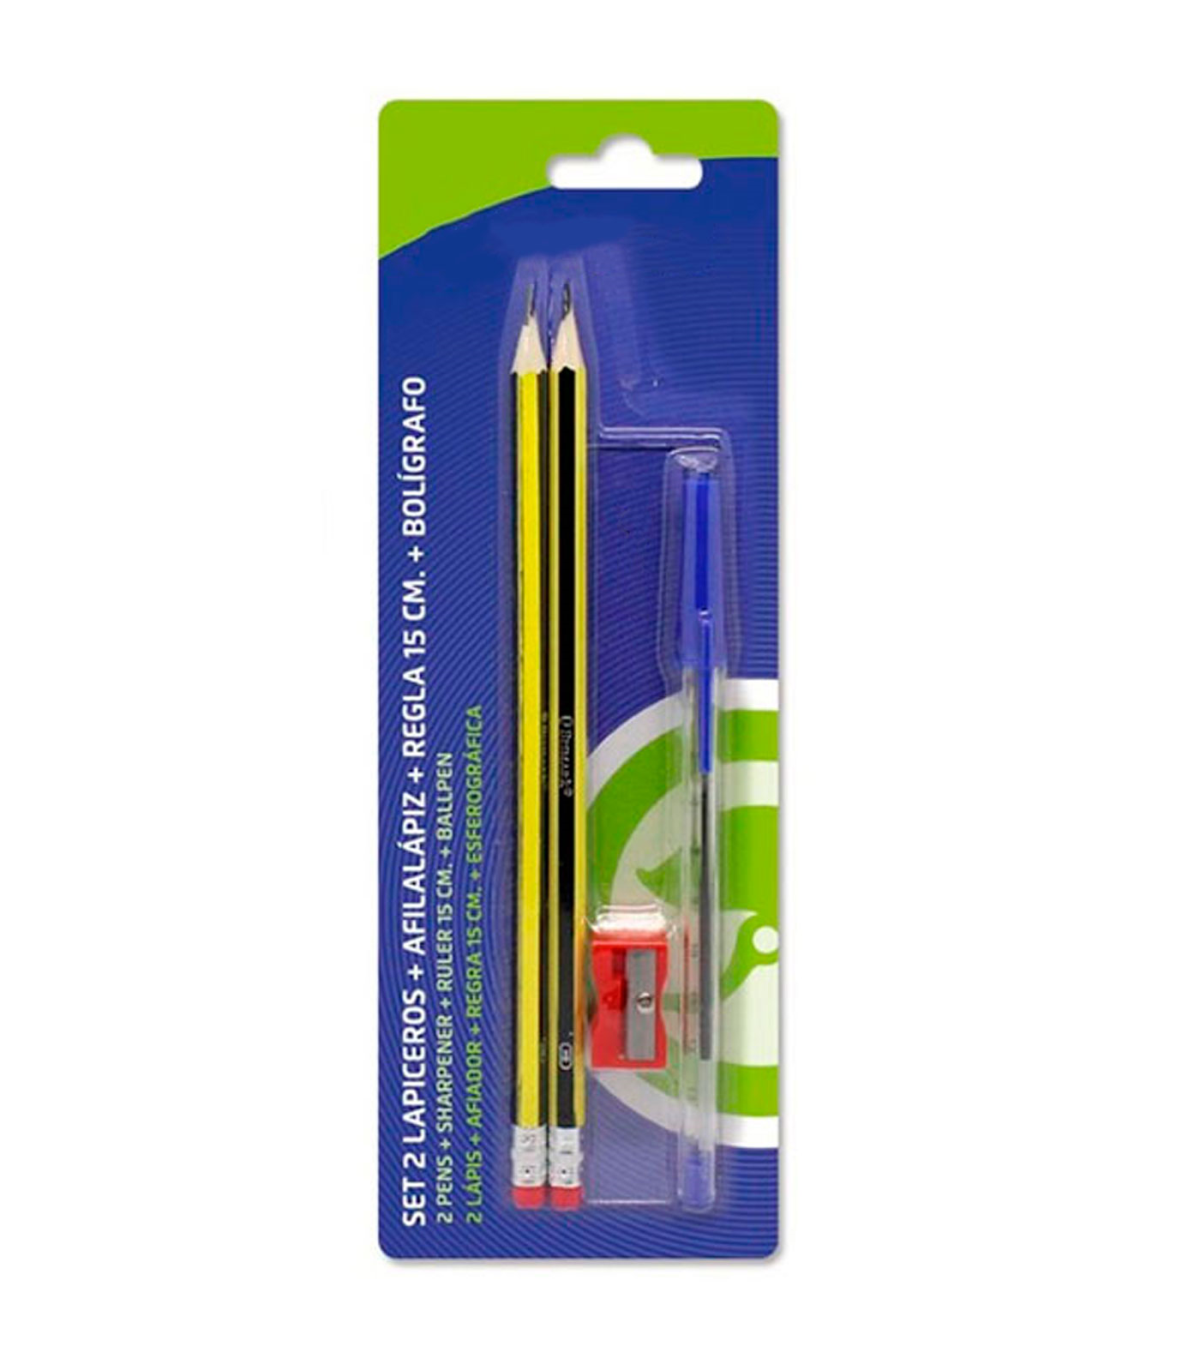 Tradineur - Set de 2 lápices con goma de borrar, afilalápiz, regla